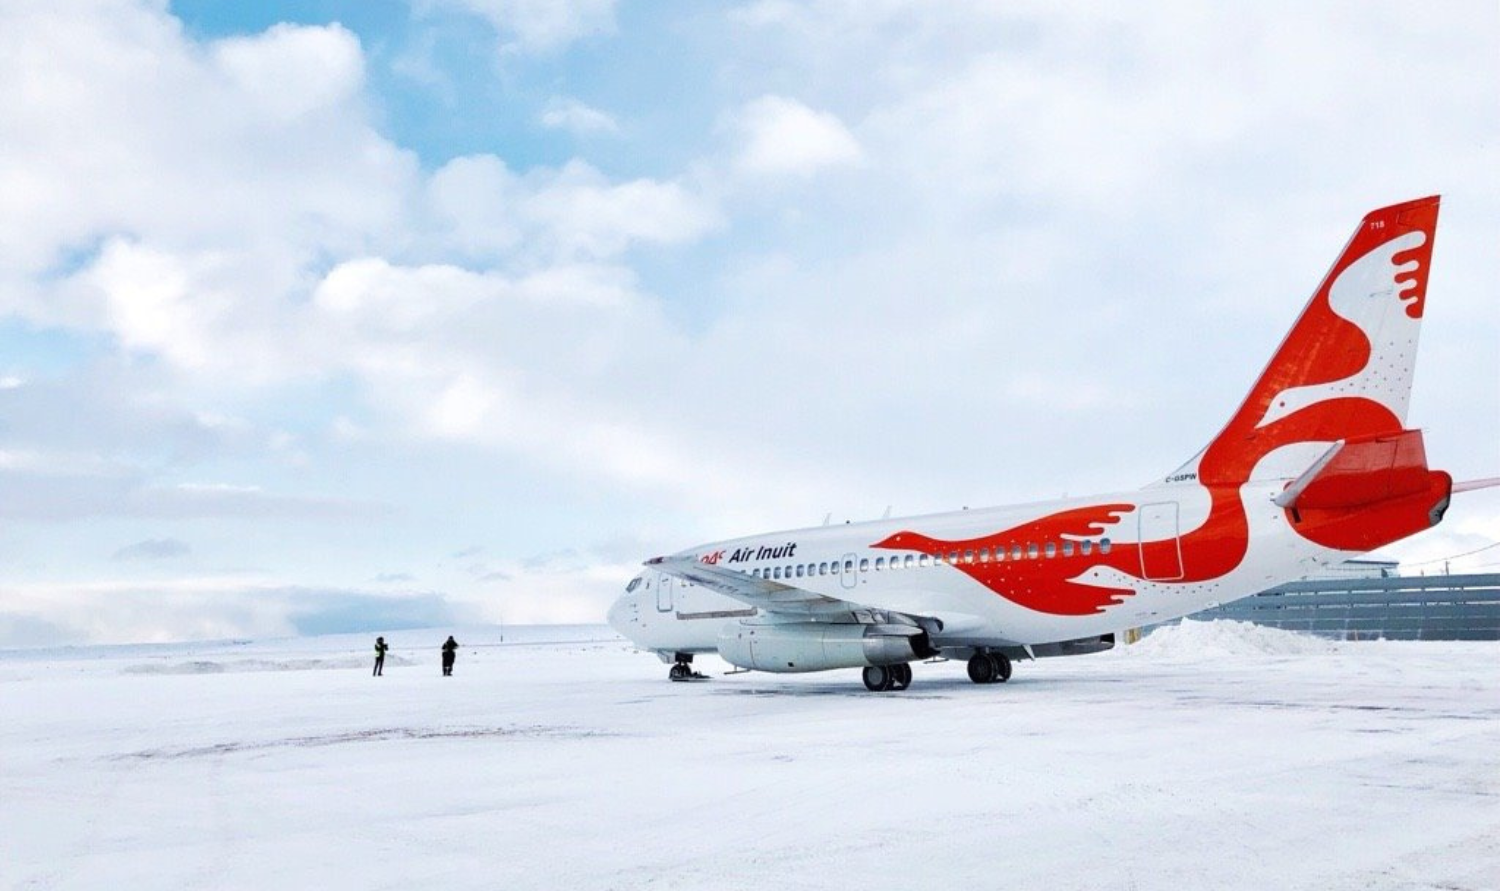 Avion Air Inuit